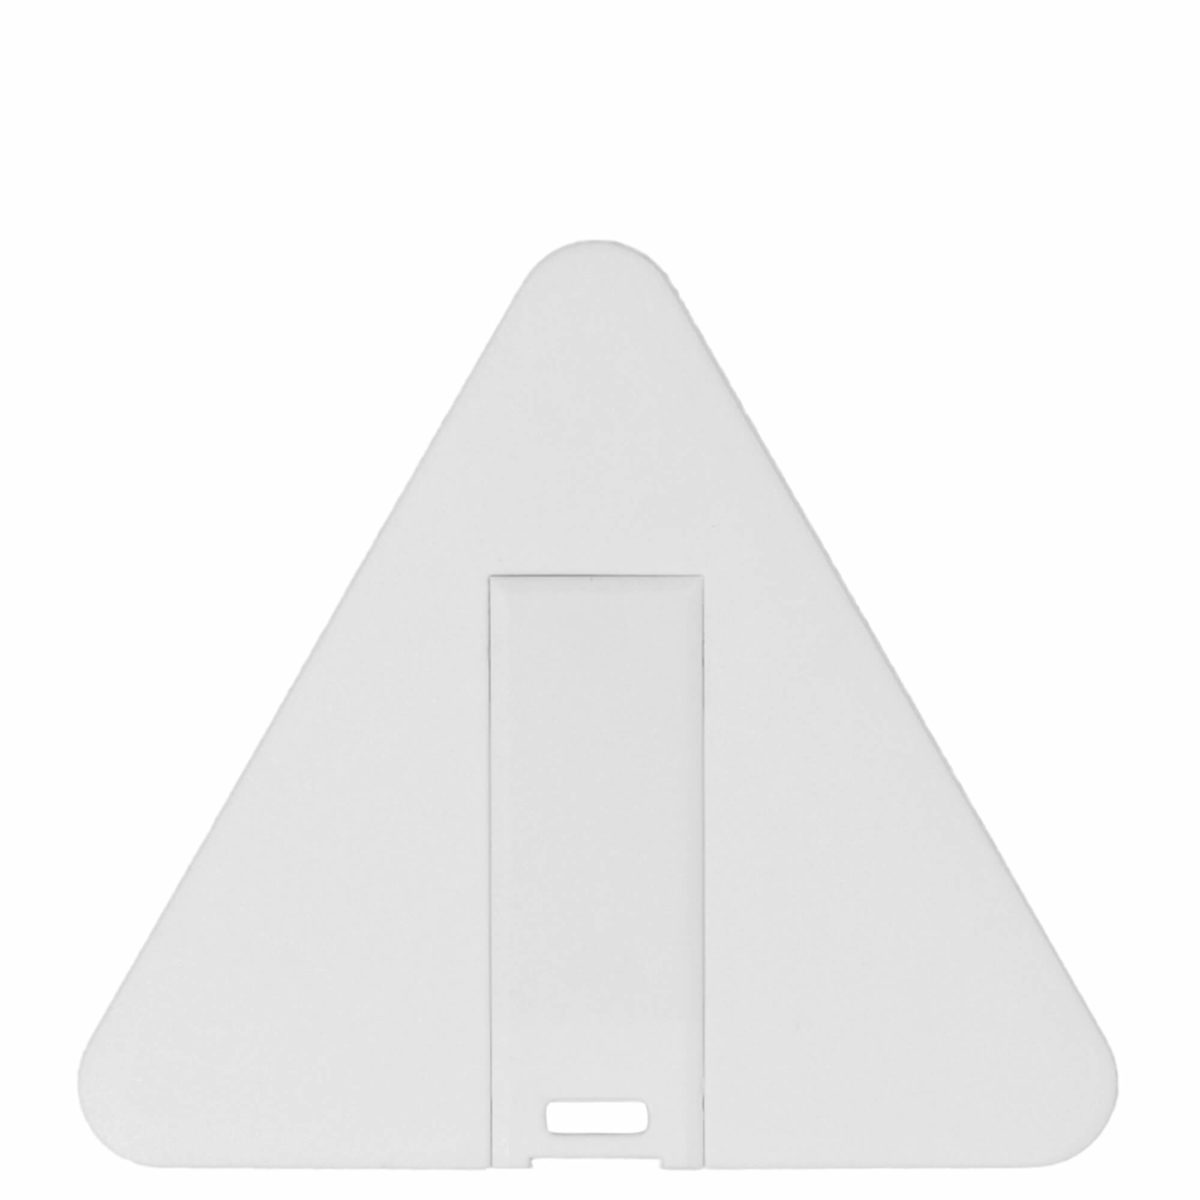 Треугольная флэшкарта белого цвета размером 55 x 46 и толщеной всего 3 мм